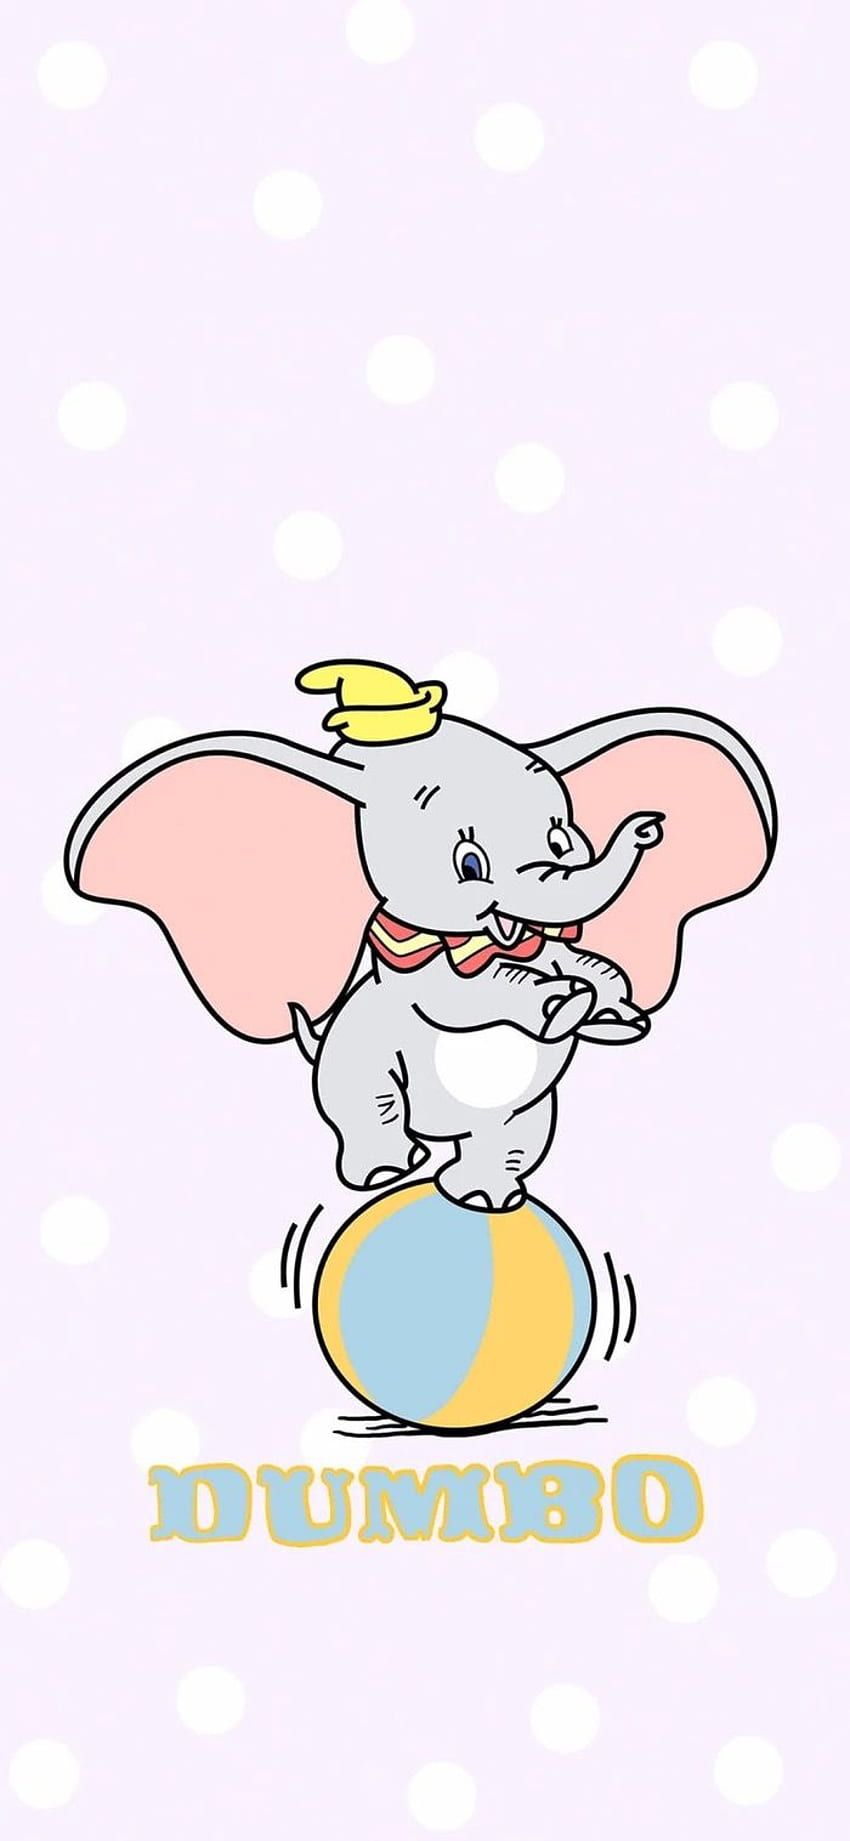 ç¾è¯ åç° on disney. Cute cartoon , Cute disney , Disney background, Baby Dumbo HD phone wallpaper